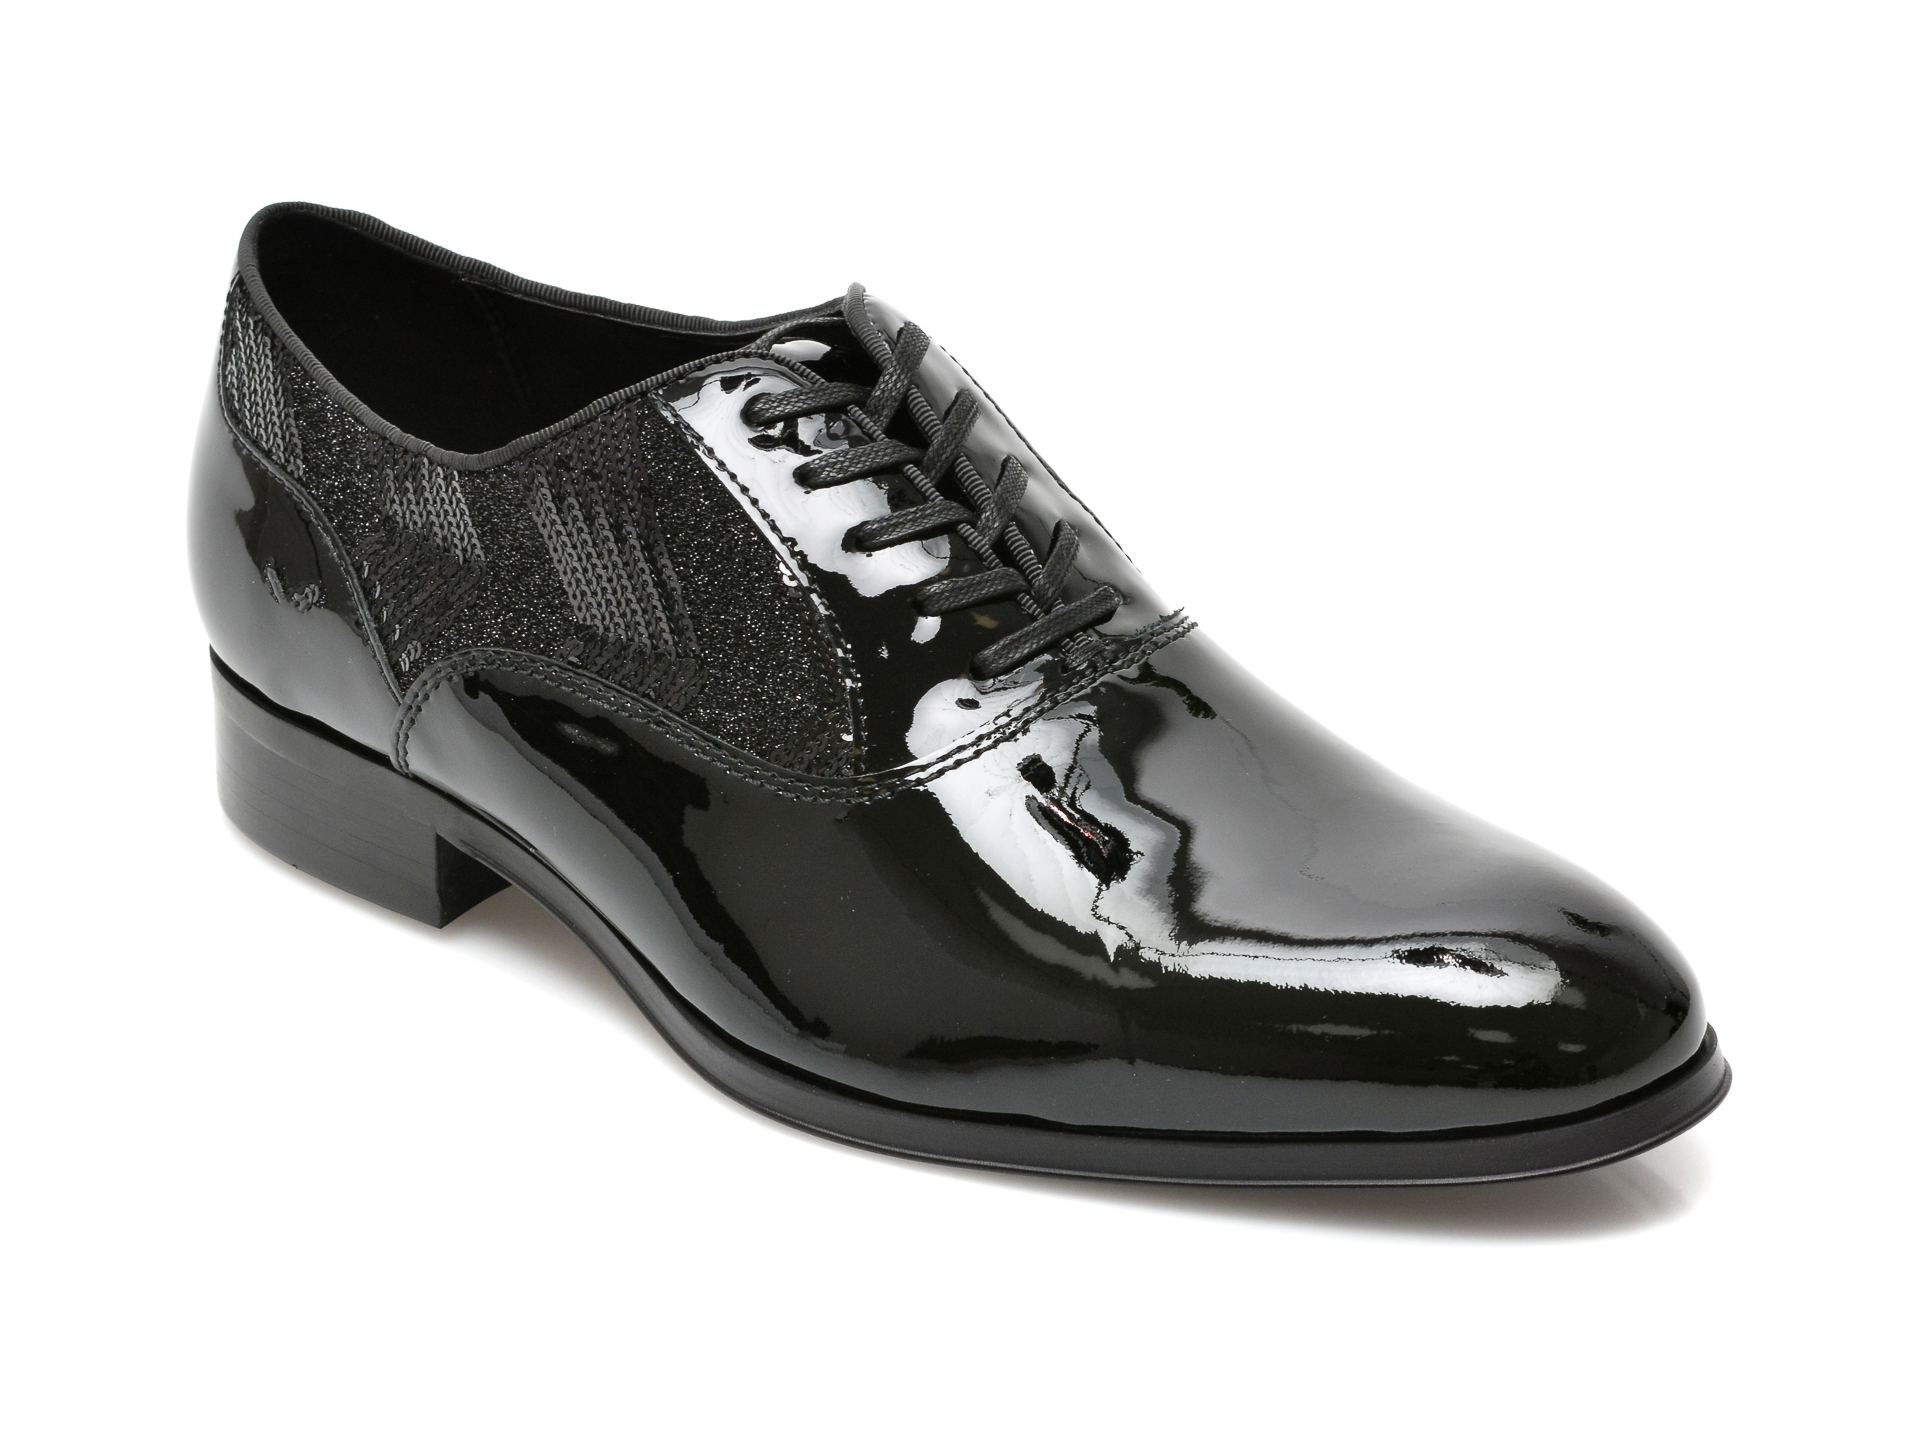 Pantofi ALDO negri, RIDGE004, din piele naturala lacuita Aldo Aldo